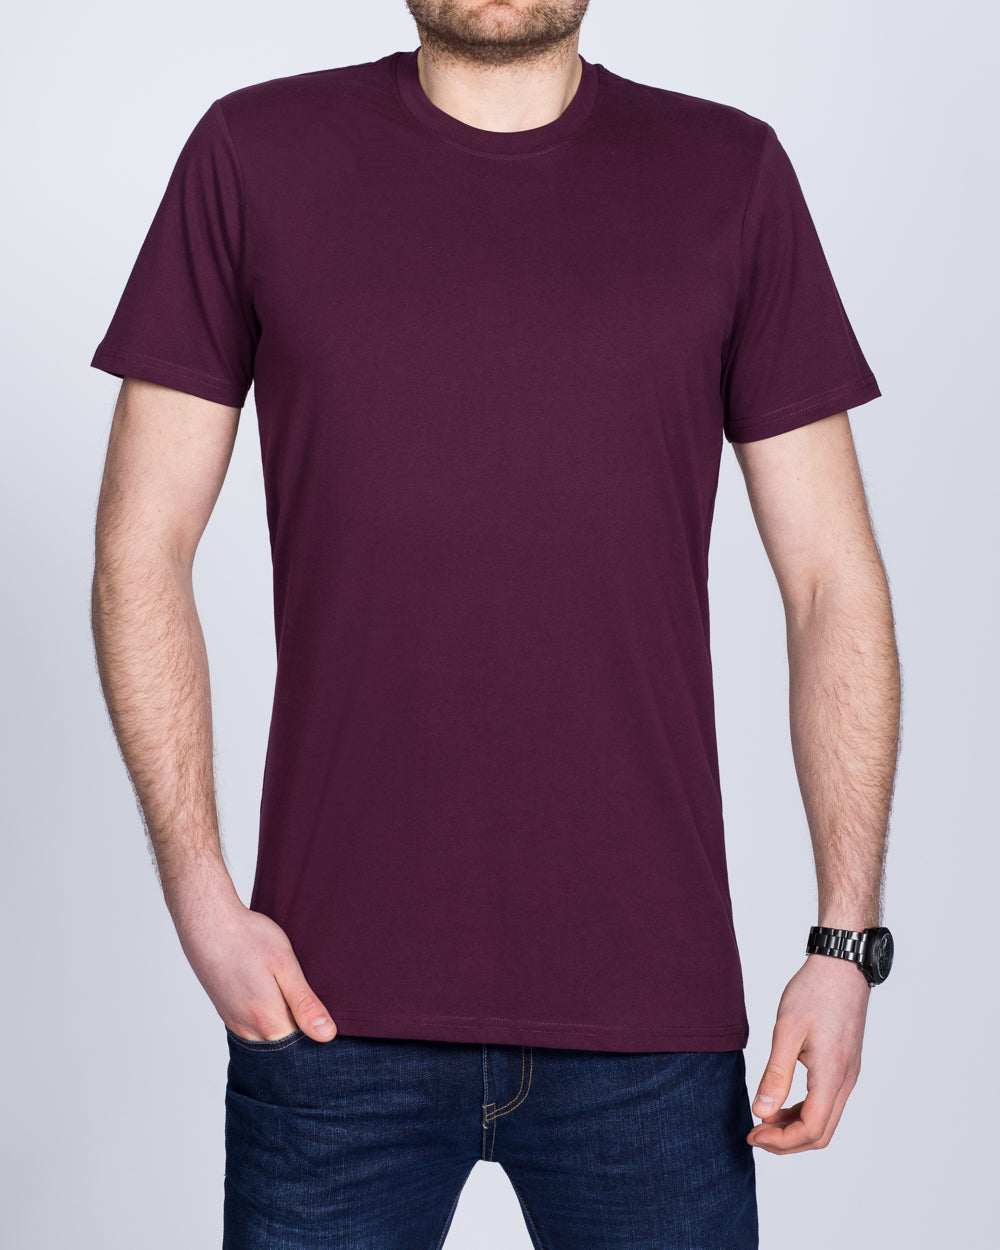 Girav Sydney Extra Tall T-Shirt (bordeaux)